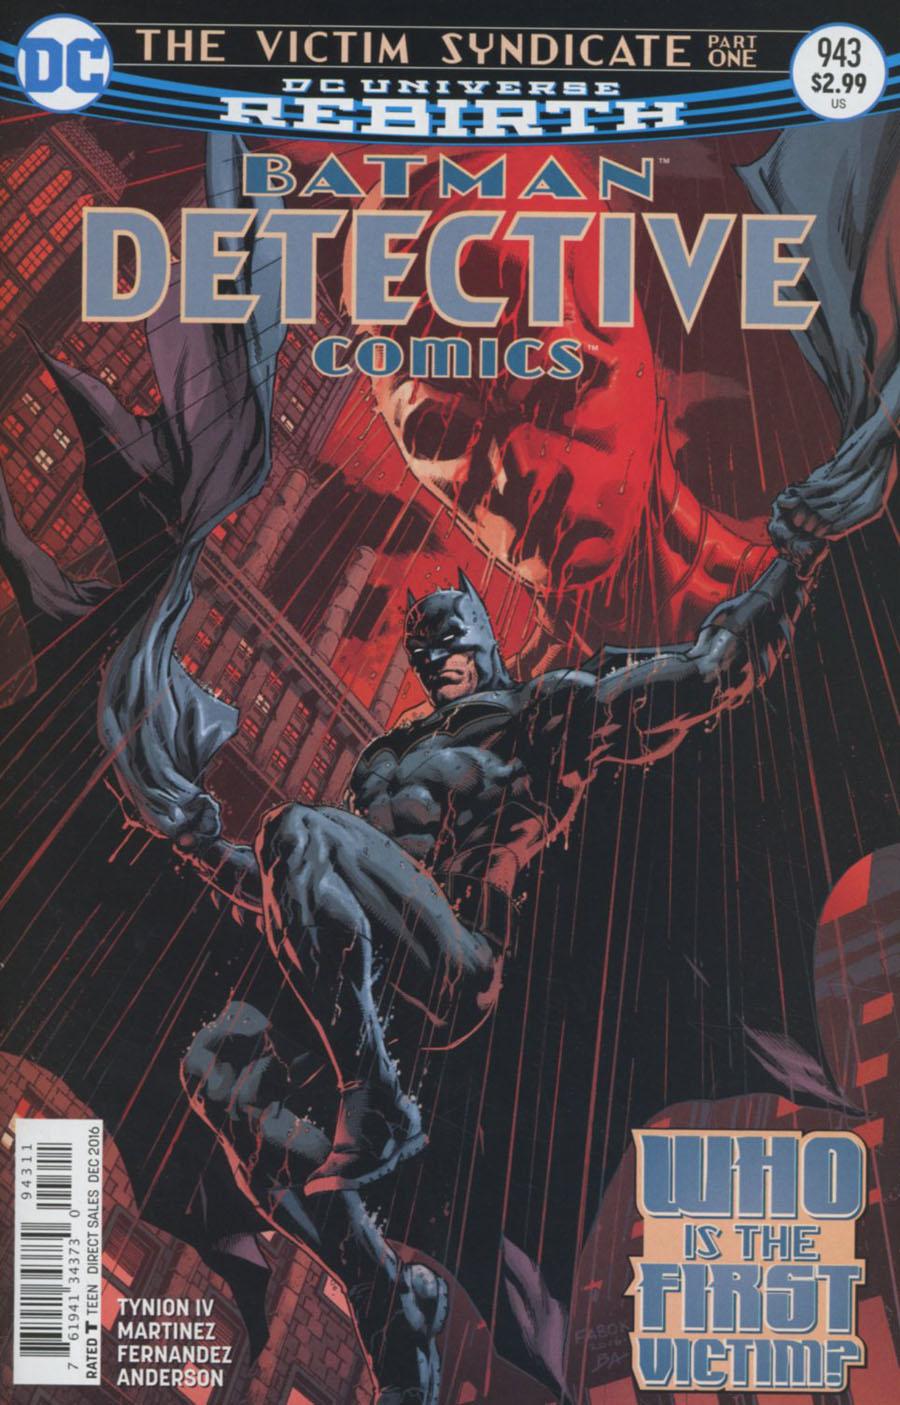 Detective Comics Vol. 2 #943